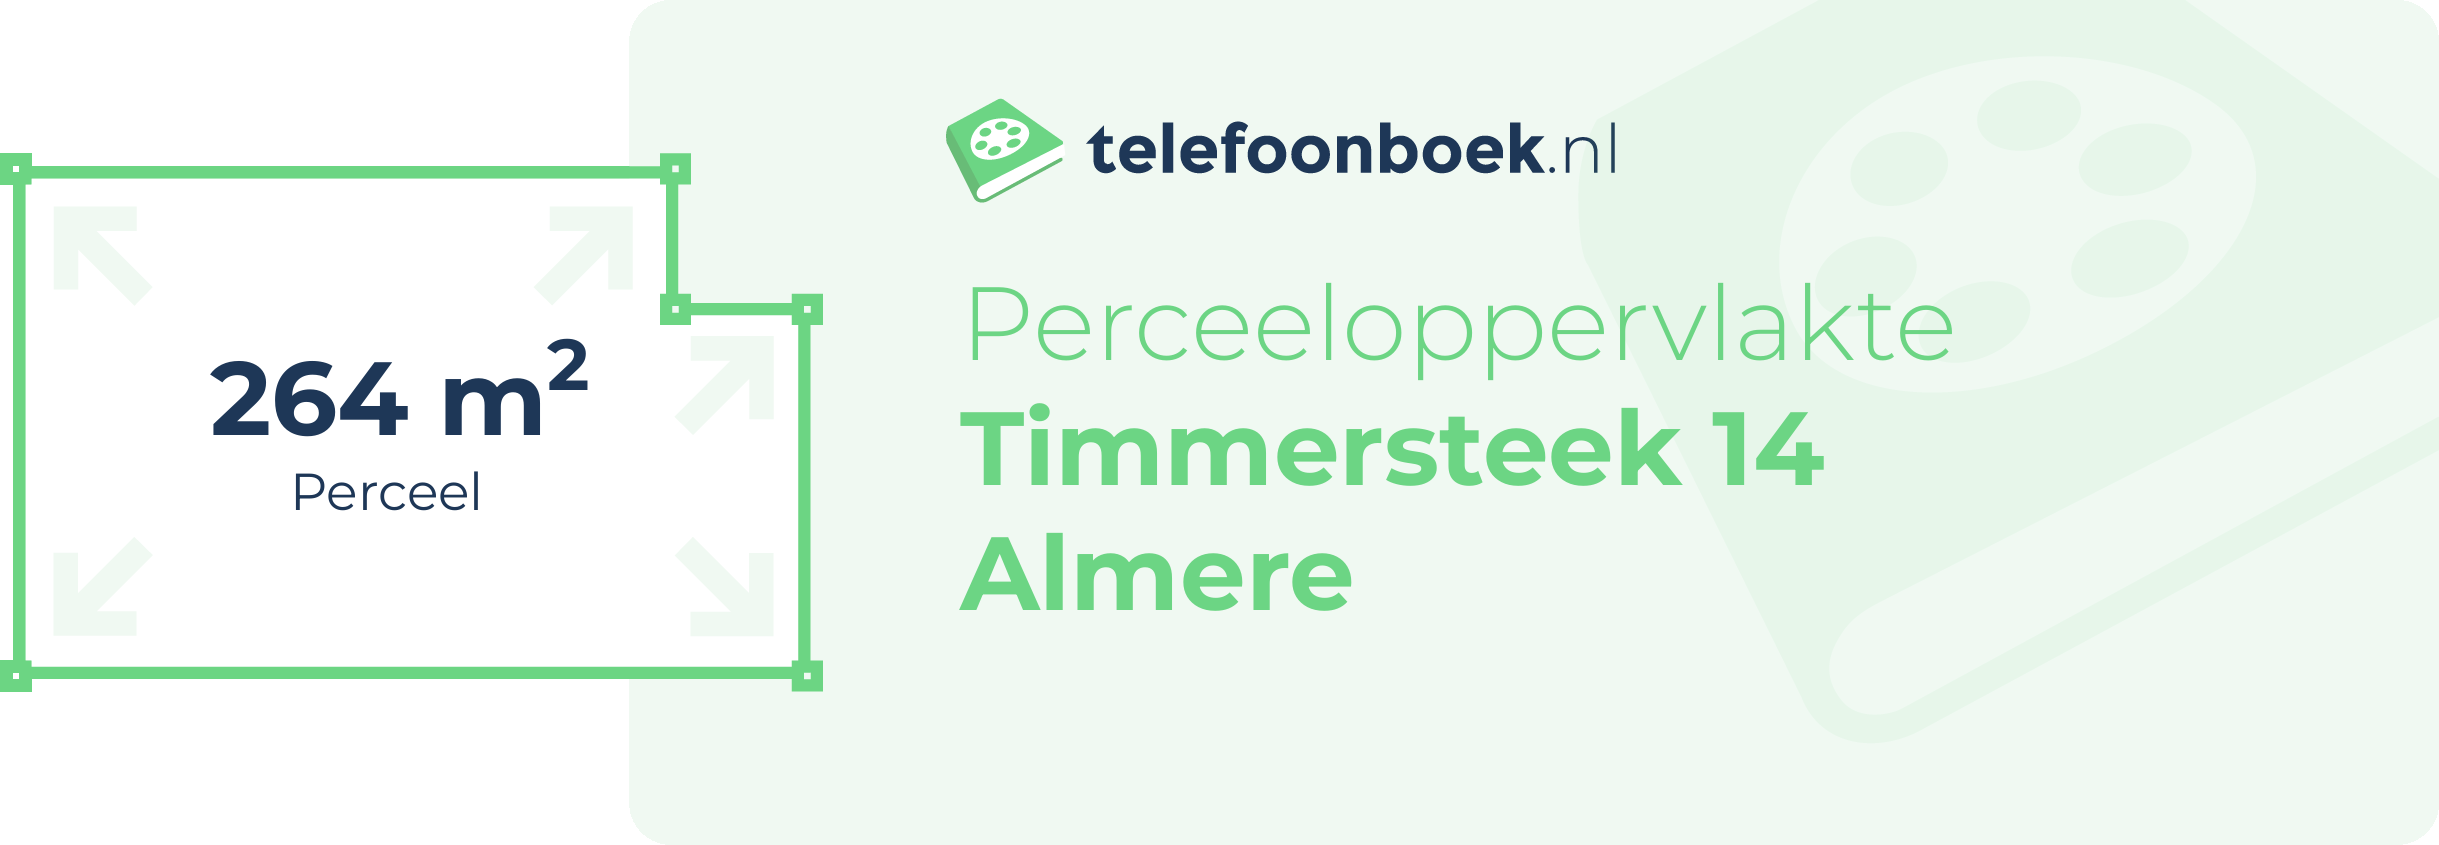 Perceeloppervlakte Timmersteek 14 Almere